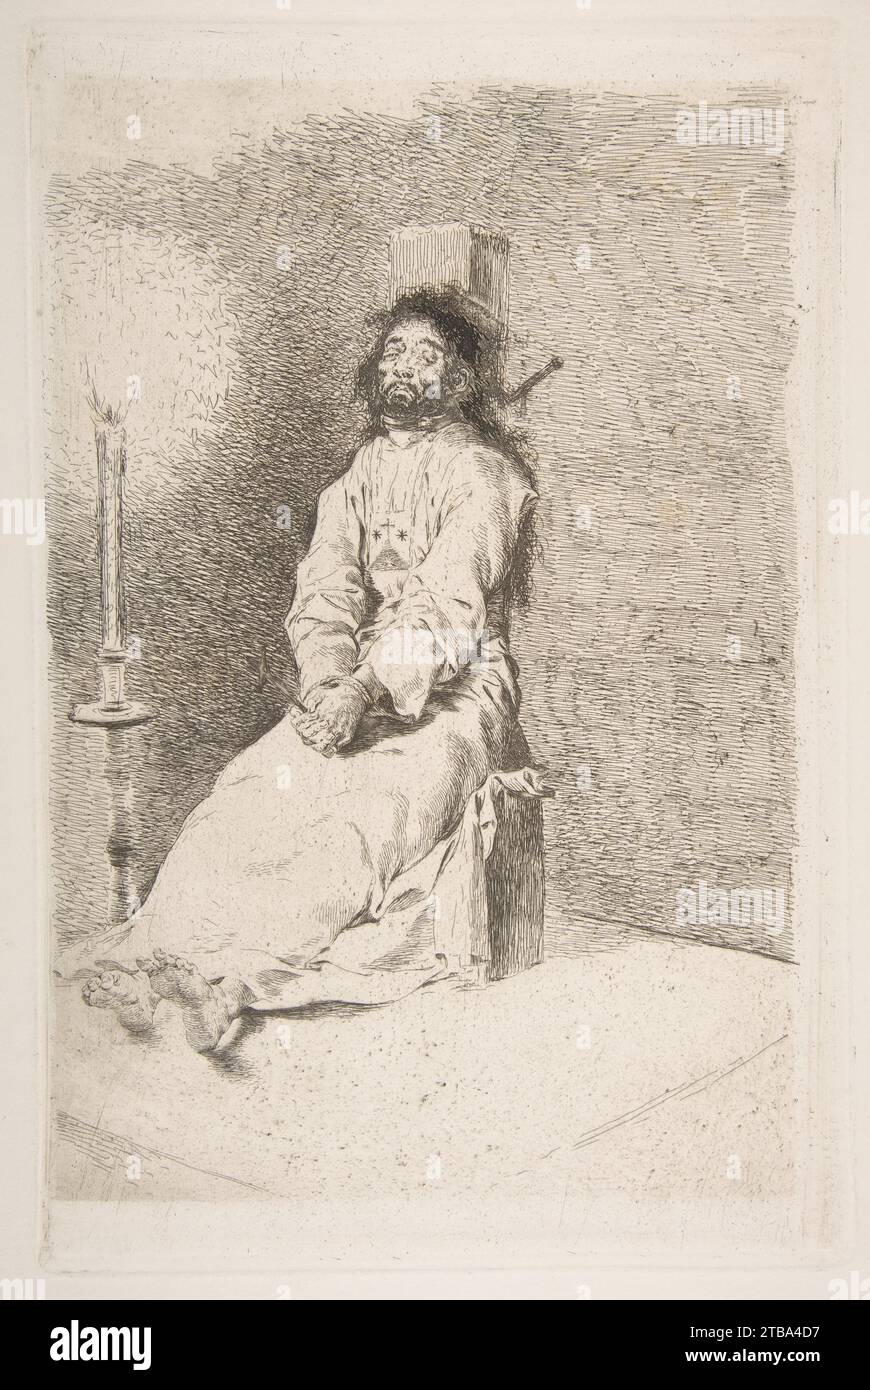 The garroted man (El agarrotado) 1950 by Goya (Francisco de Goya y Lucientes) Stock Photo